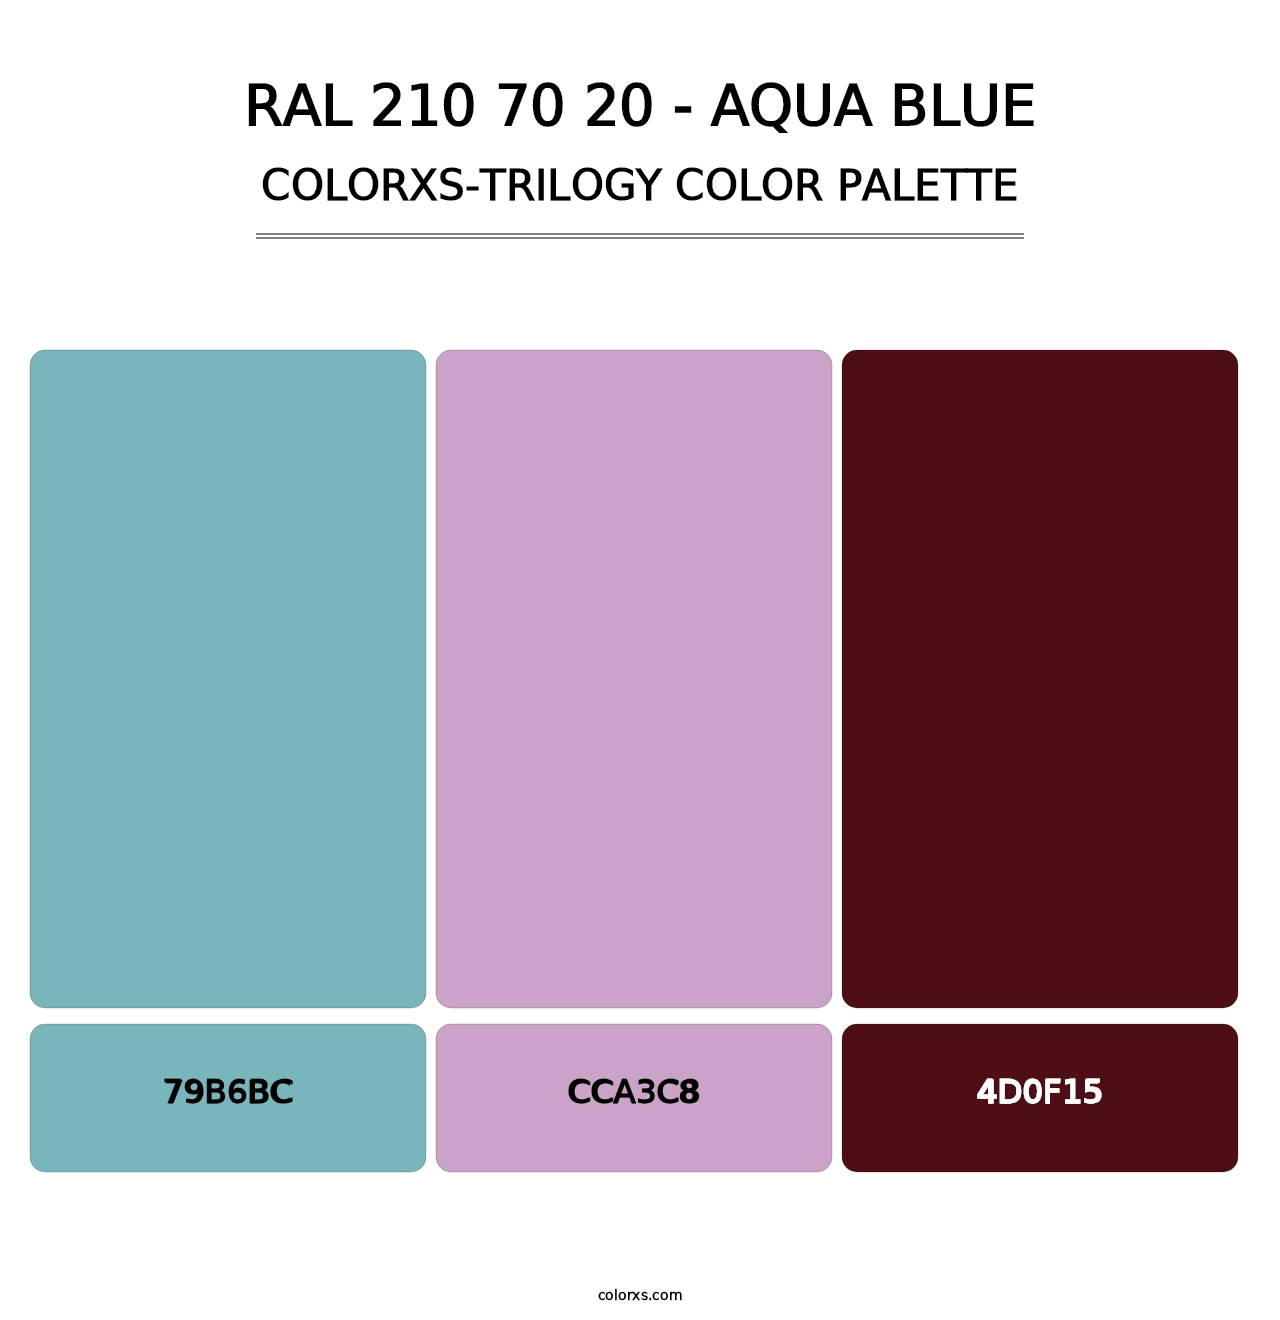 RAL 210 70 20 - Aqua Blue - Colorxs Trilogy Palette